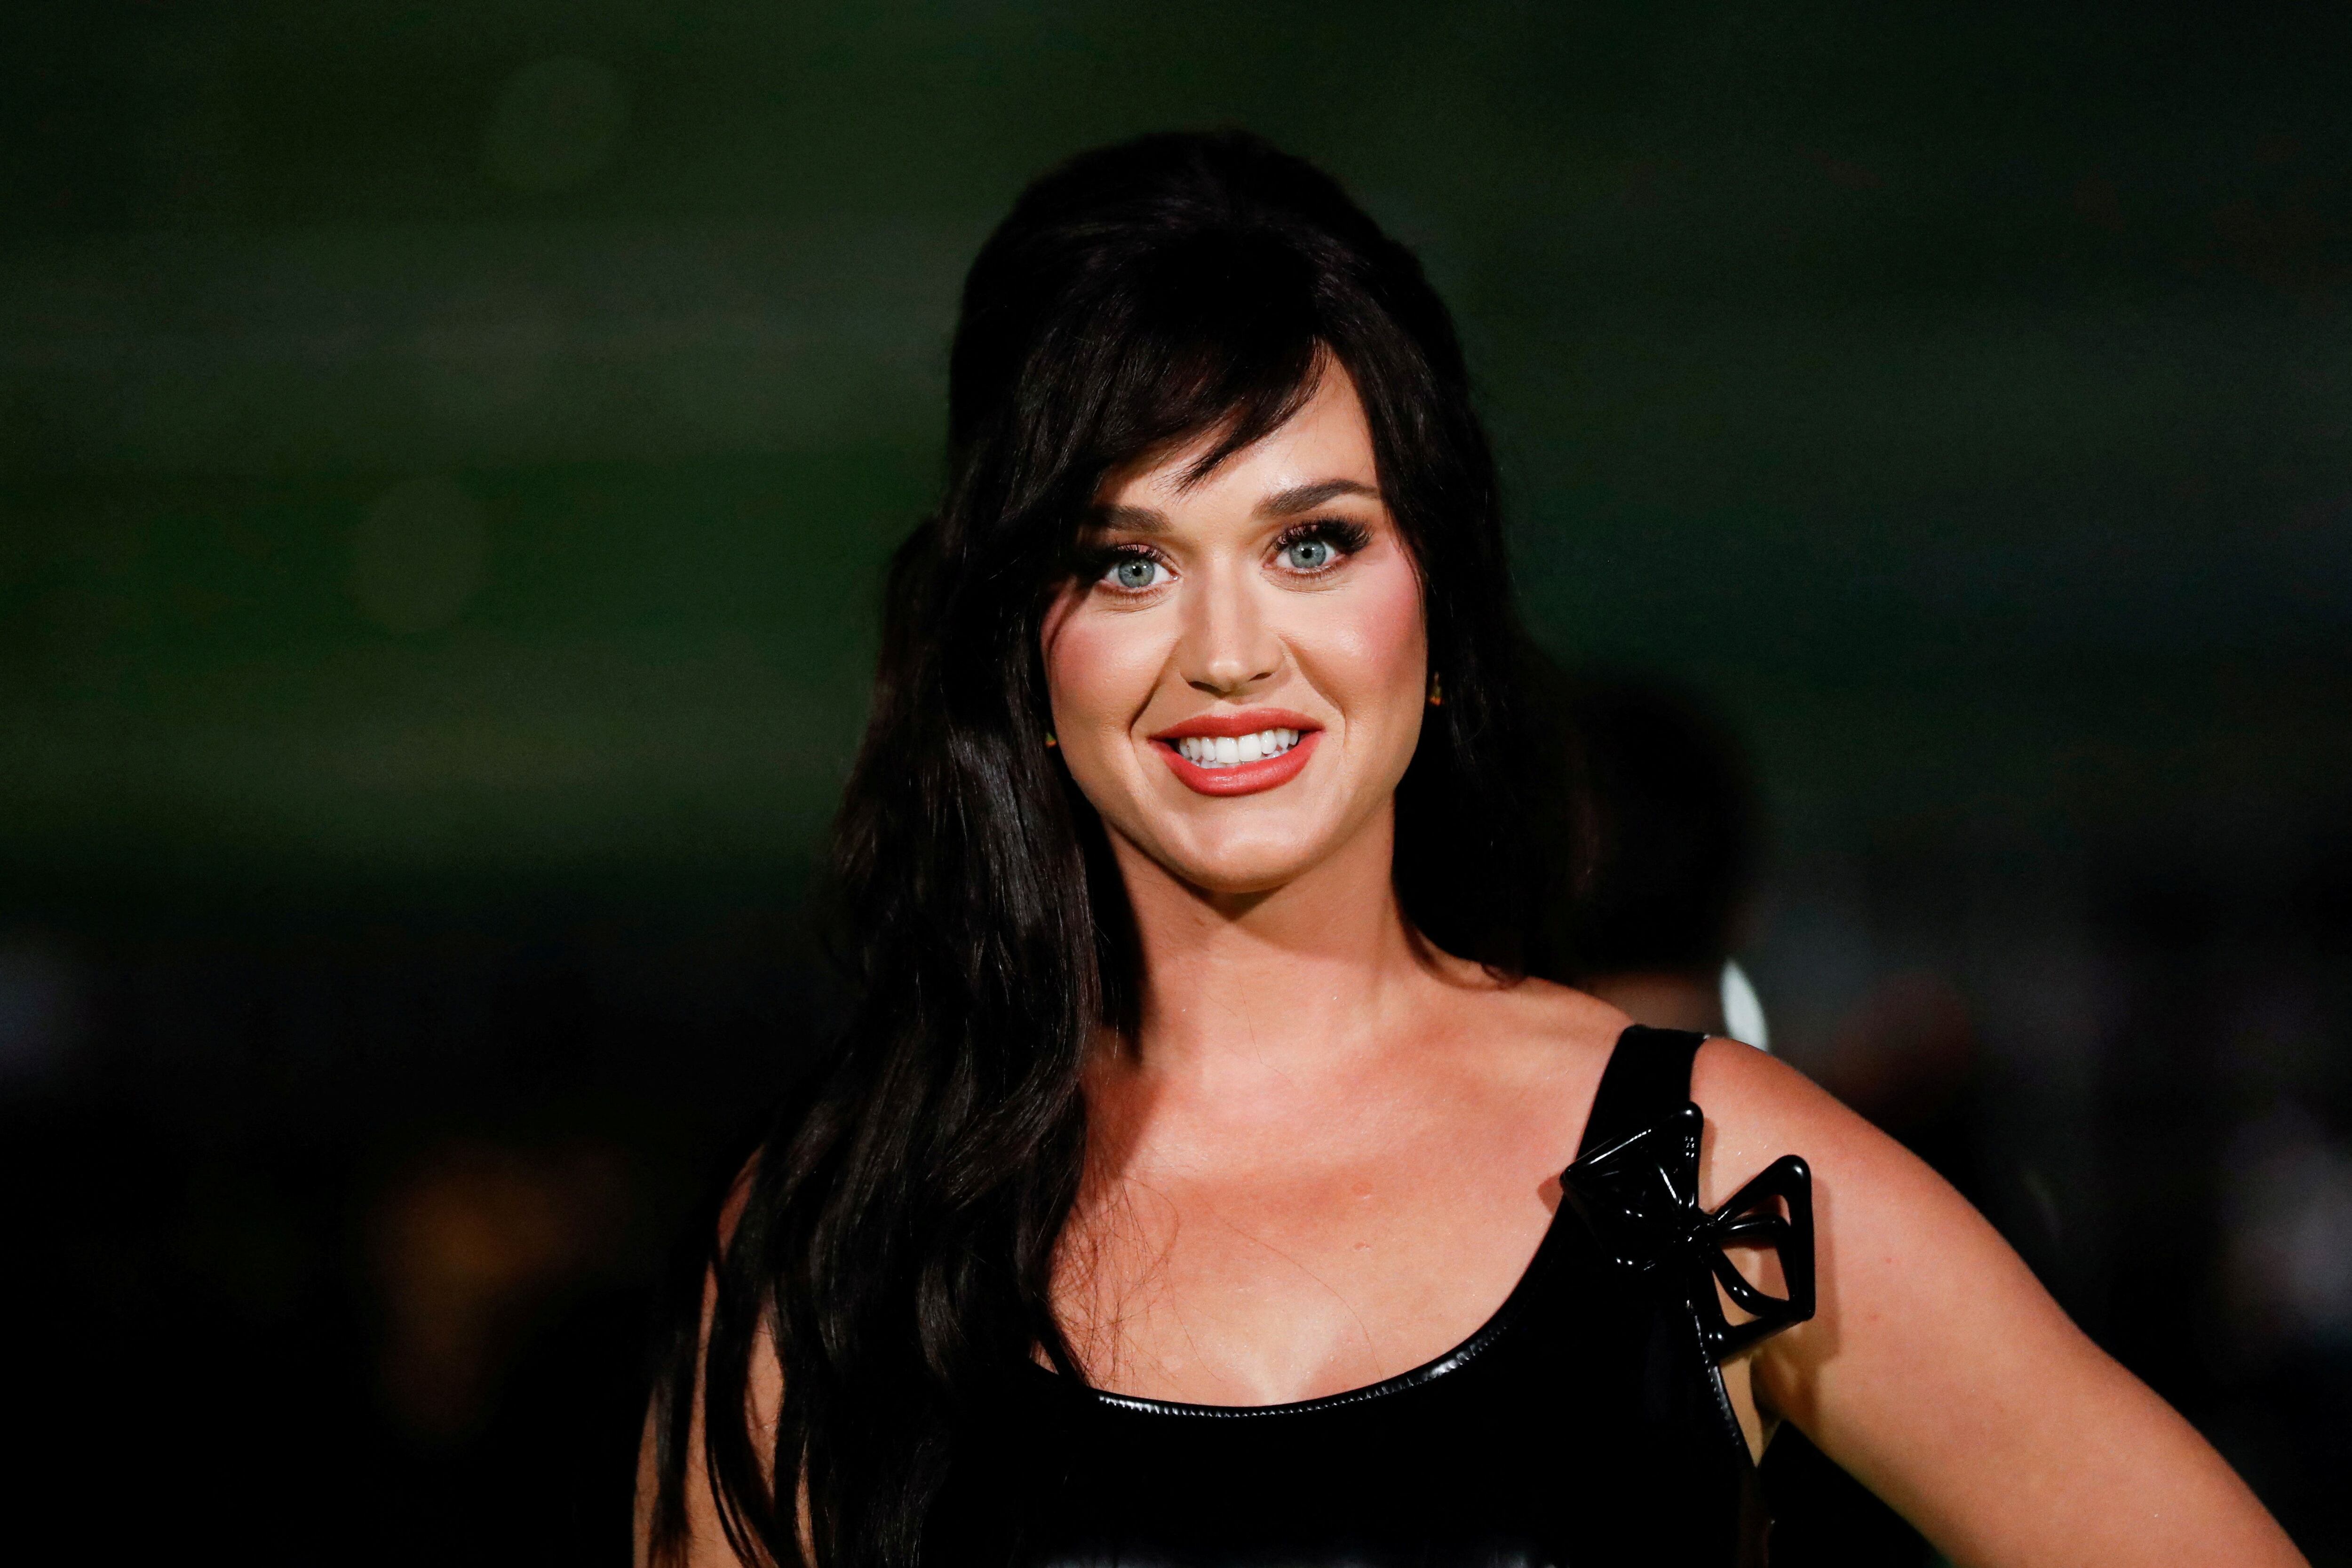 Katy Perry manejó el incidente con su característico sentido del humor ante las cámaras (Créditos: REUTERS/Mario Anzuoni)